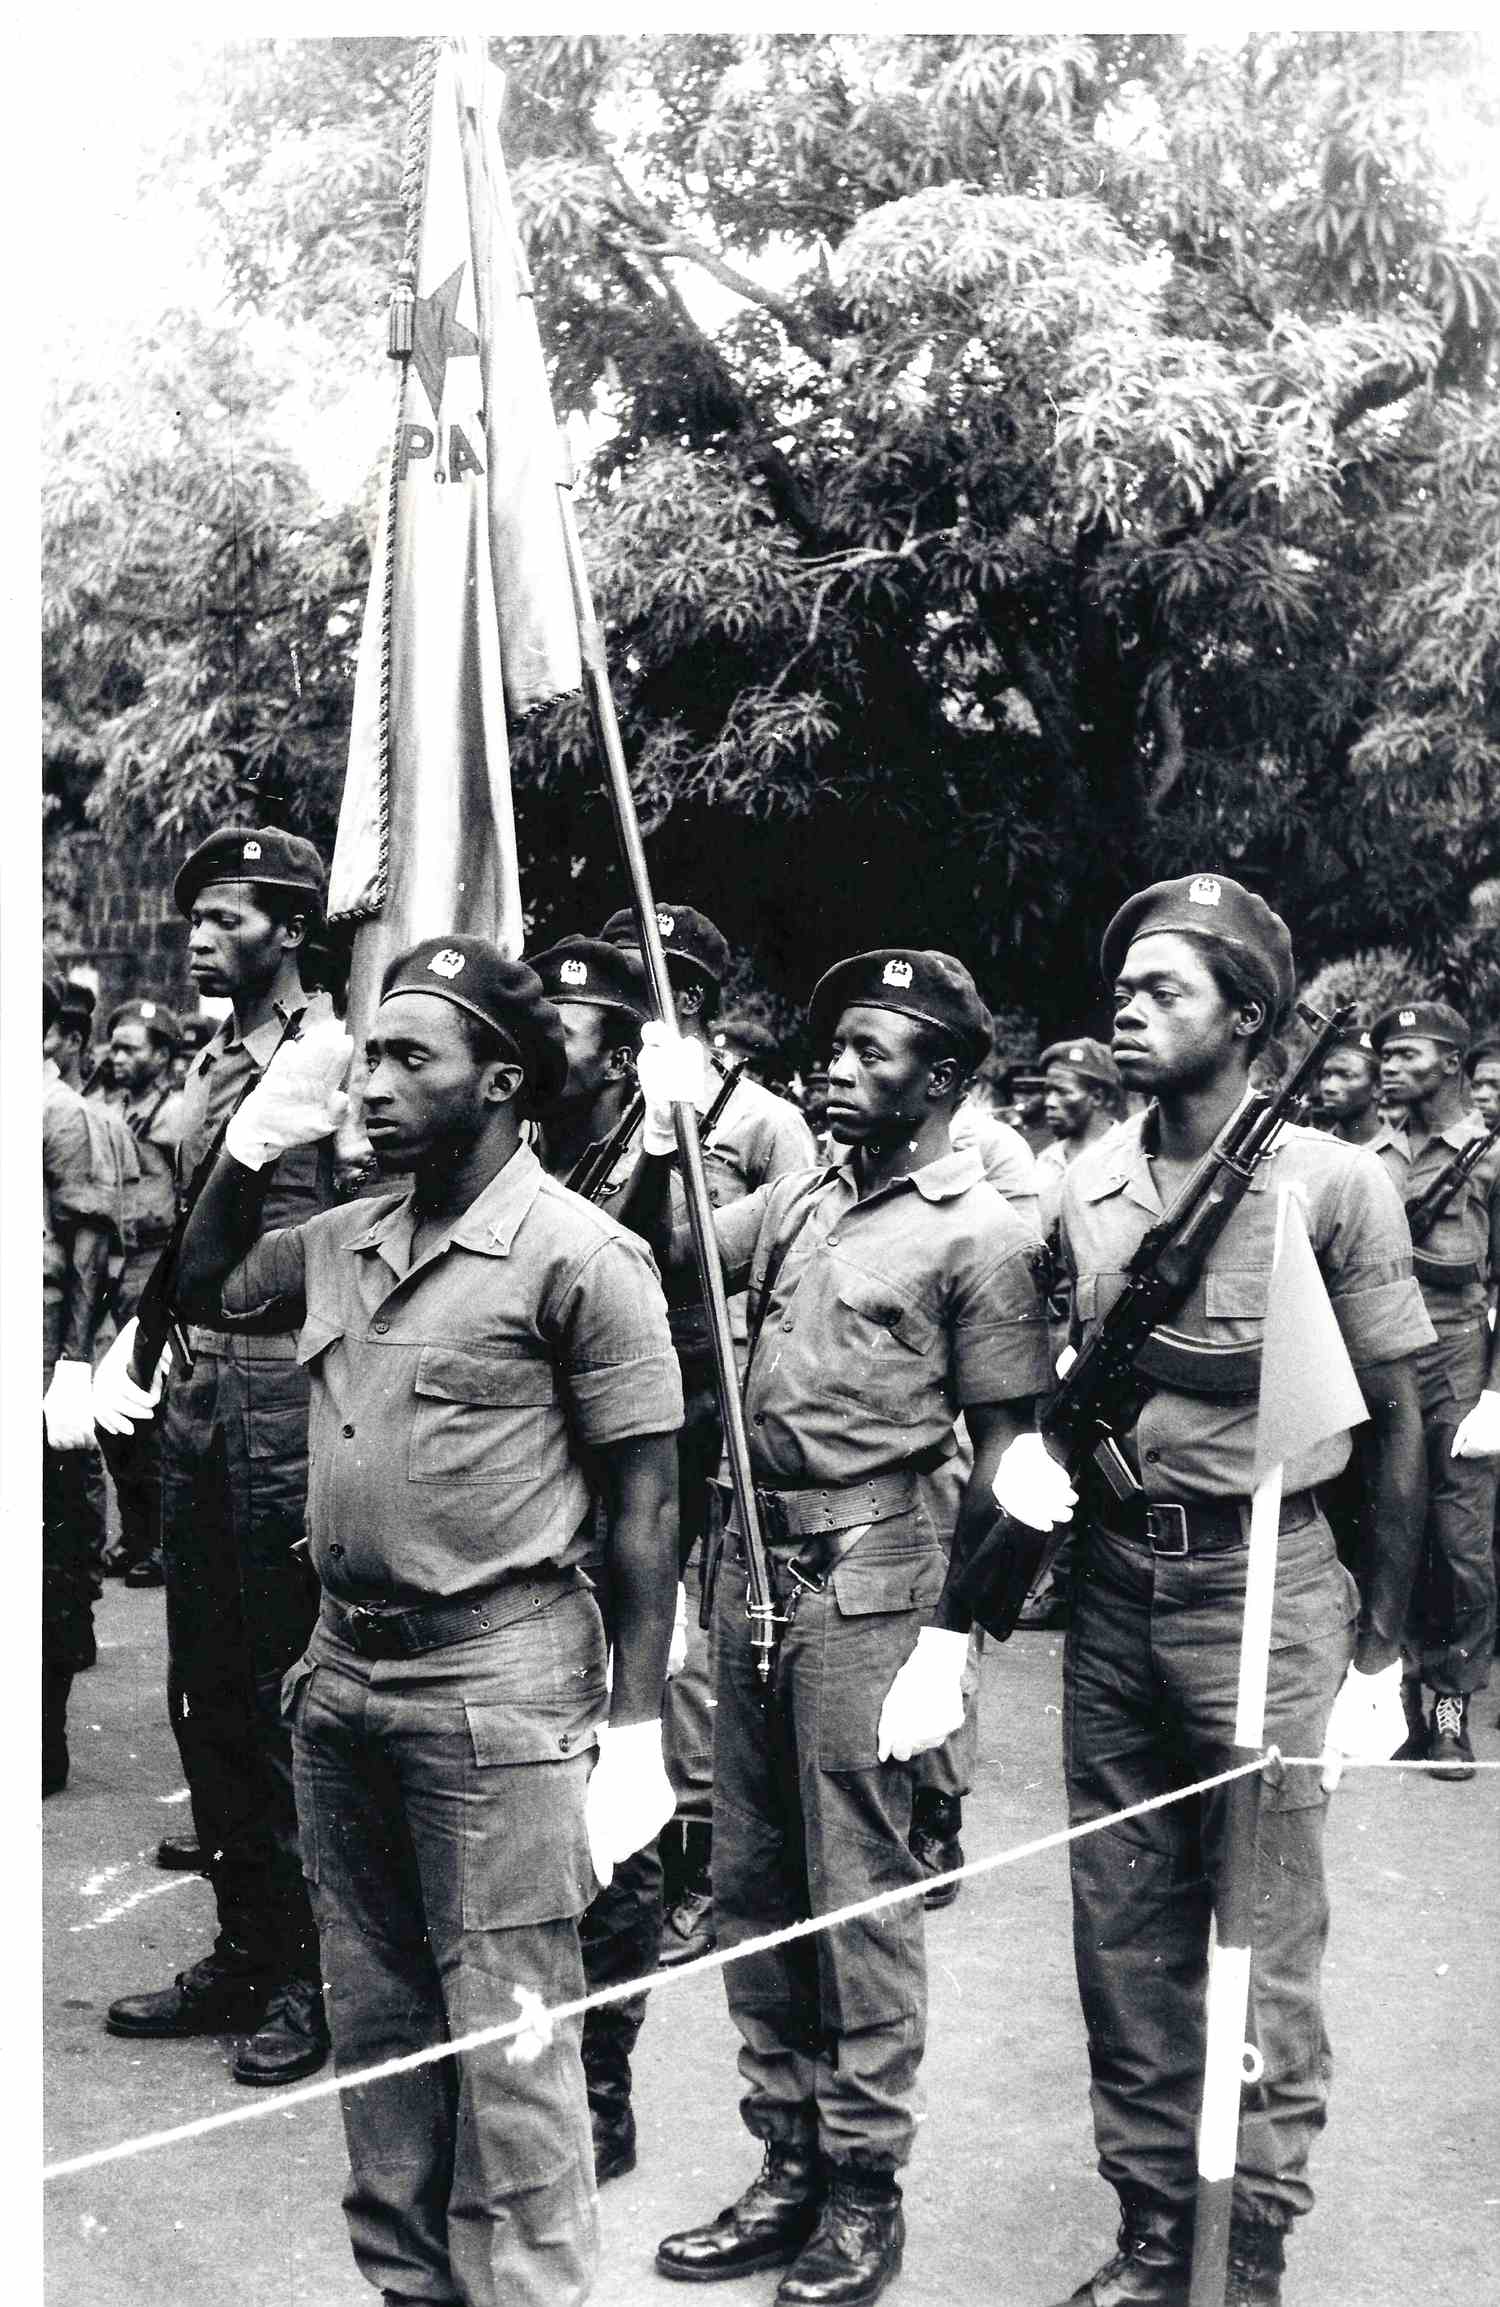 Алексеев Г. Фотография «Воины Республики Гвинея-Бисау под знаменем Африканской партии независимости Гвинеи и Островов Зелёного Мыса». 1979.